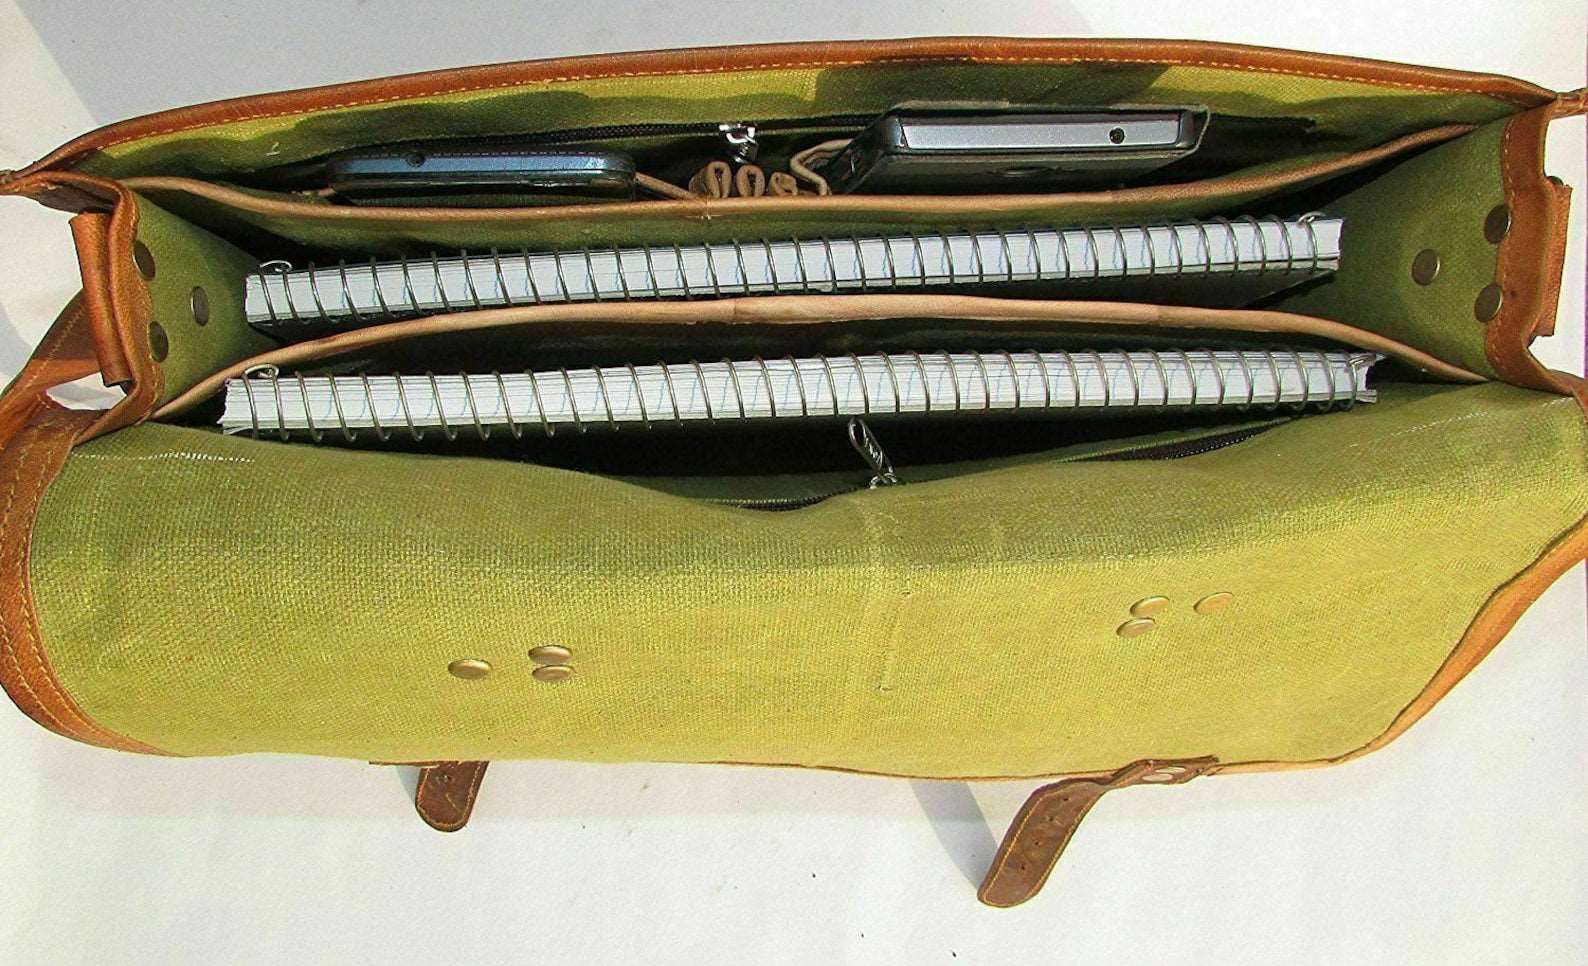 15” Mens Goat Leather Vintage Brown Messenger Bag Shoulder Laptop Bag Briefcase Unisex Handmade Rustic